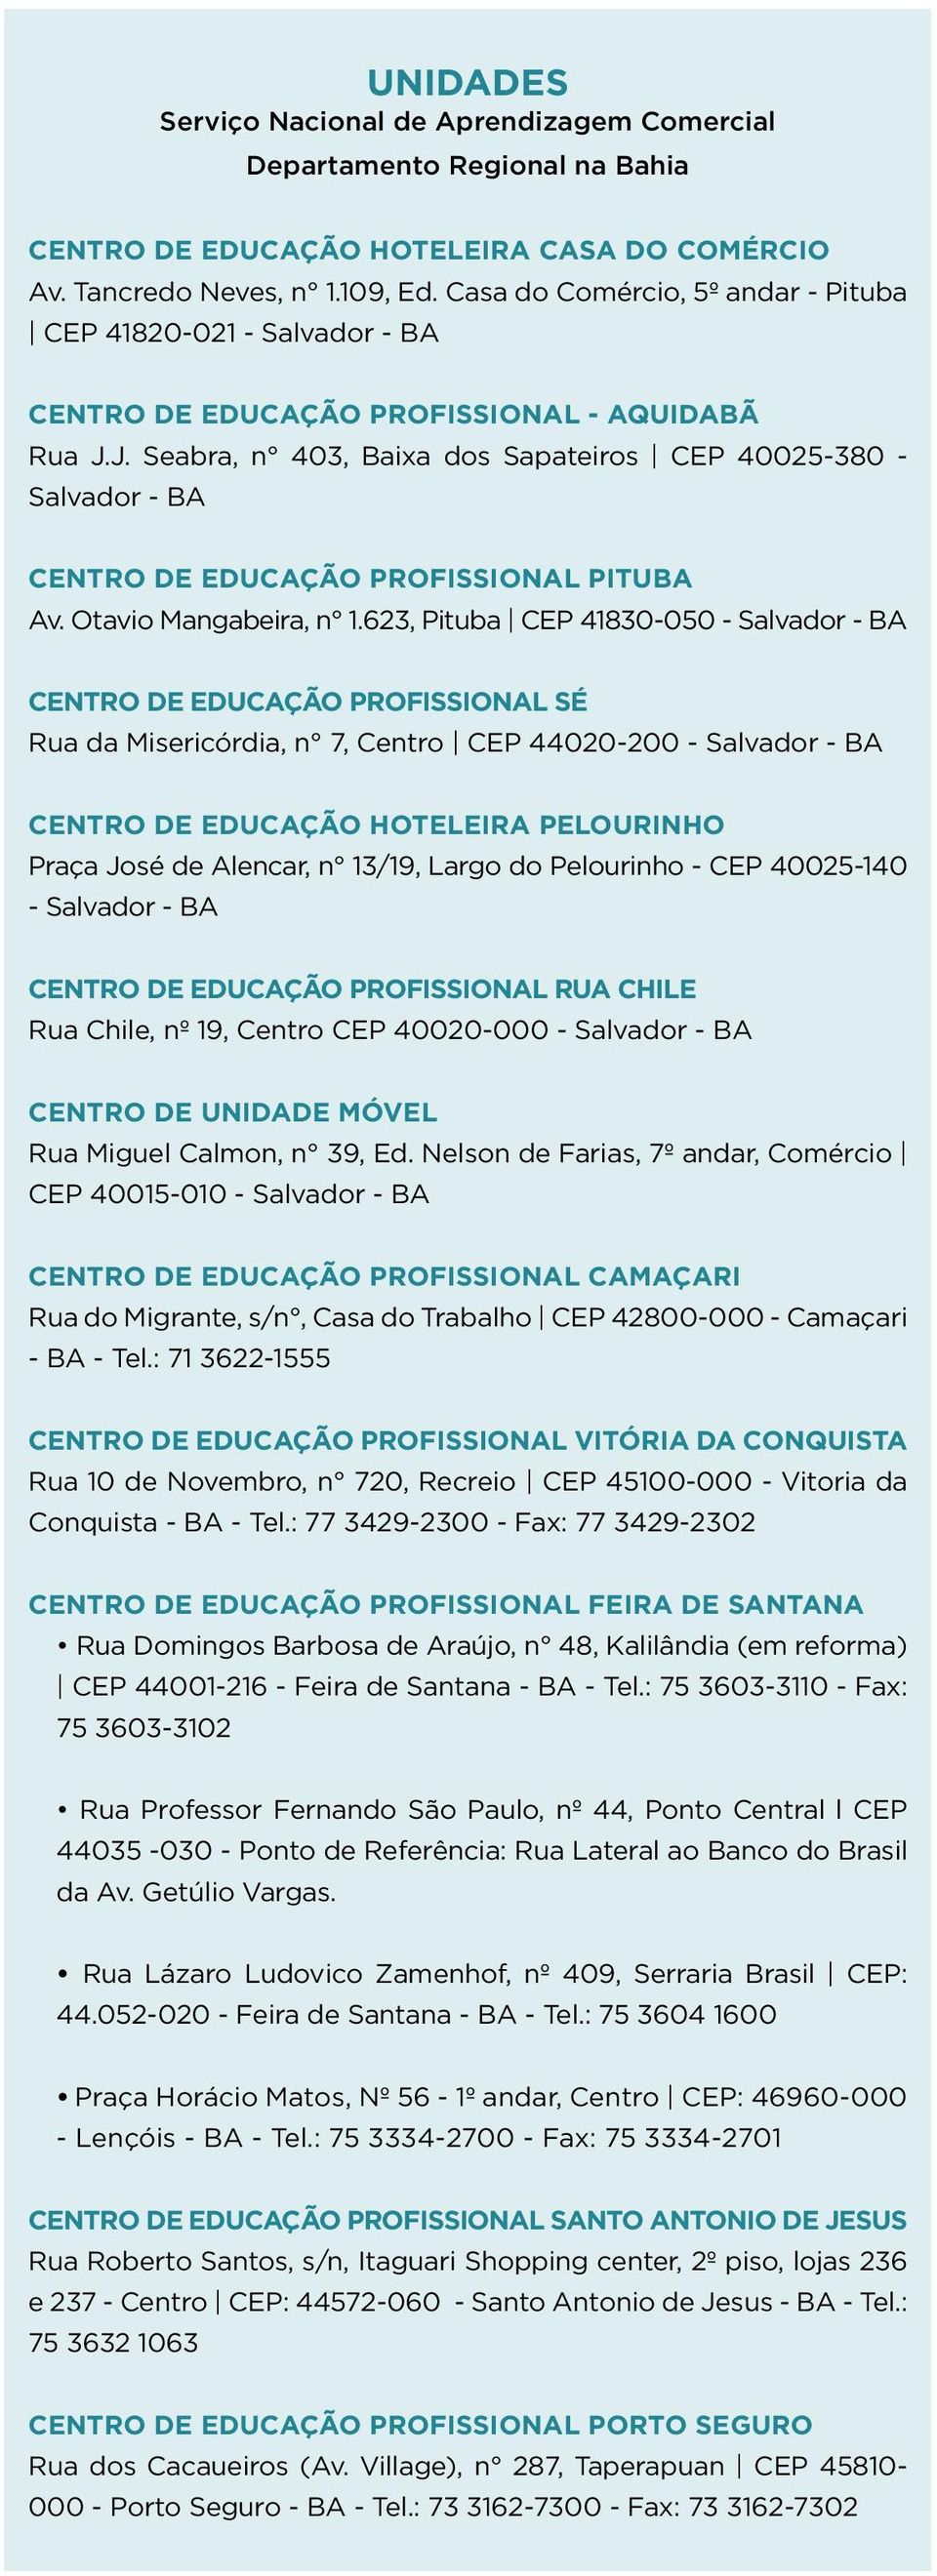 J. Seabra, n 403, Baixa dos Sapateiros CEP 40025-380 - Salvador - BA CENTRO DE EDUCAÇÃO PROFISSIONAL PITUBA Av. Otavio Mangabeira, n 1.